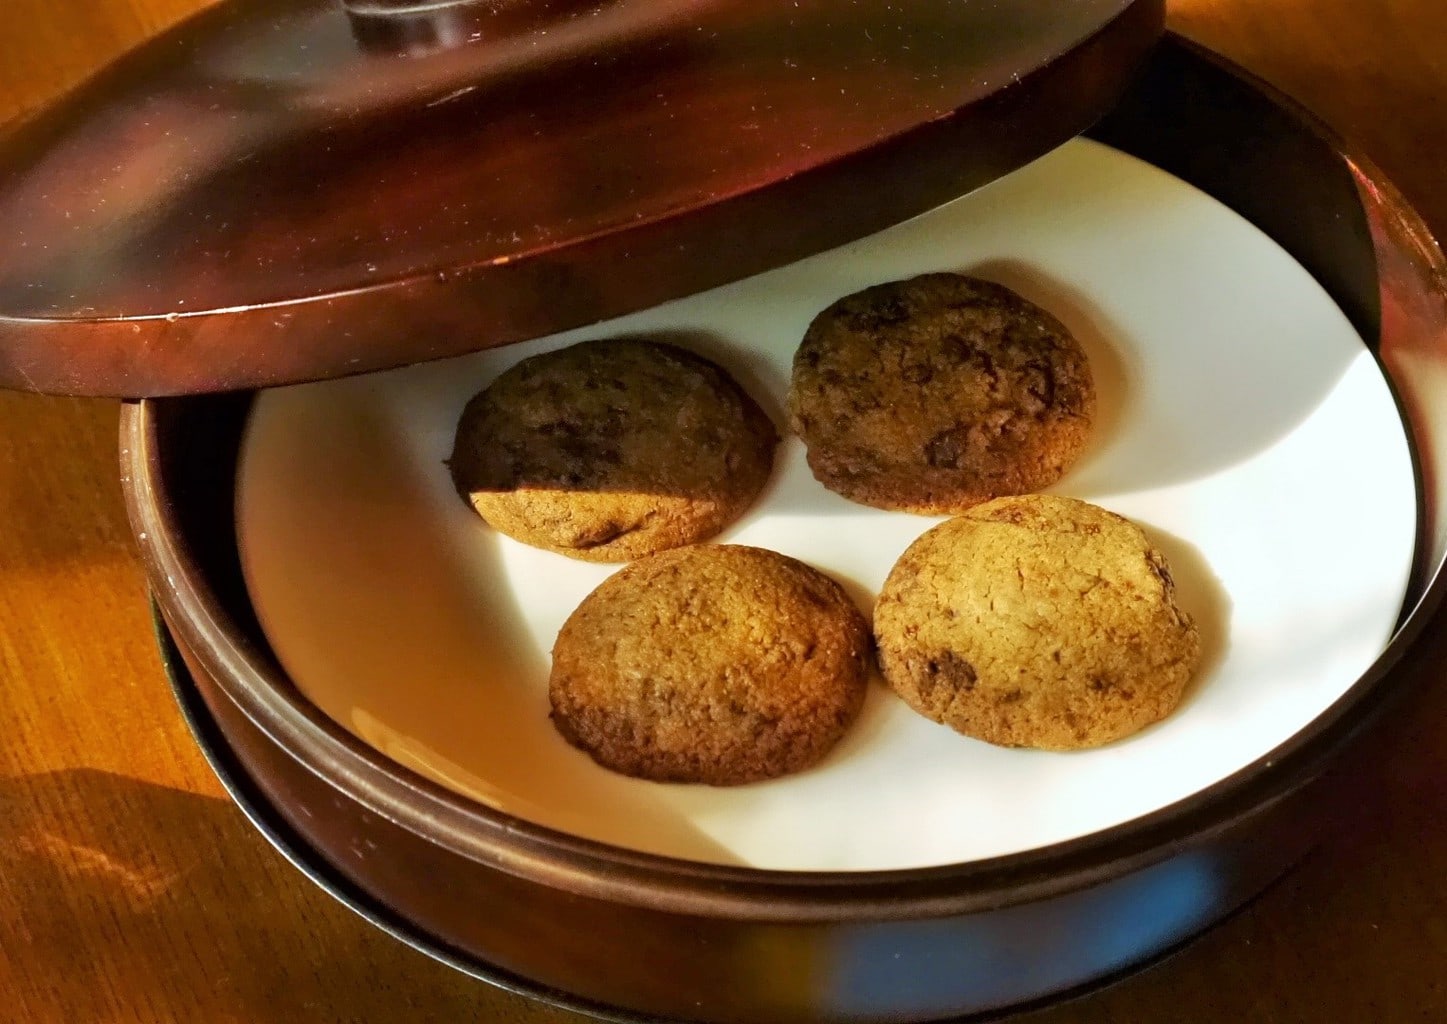 Afternoon cookies